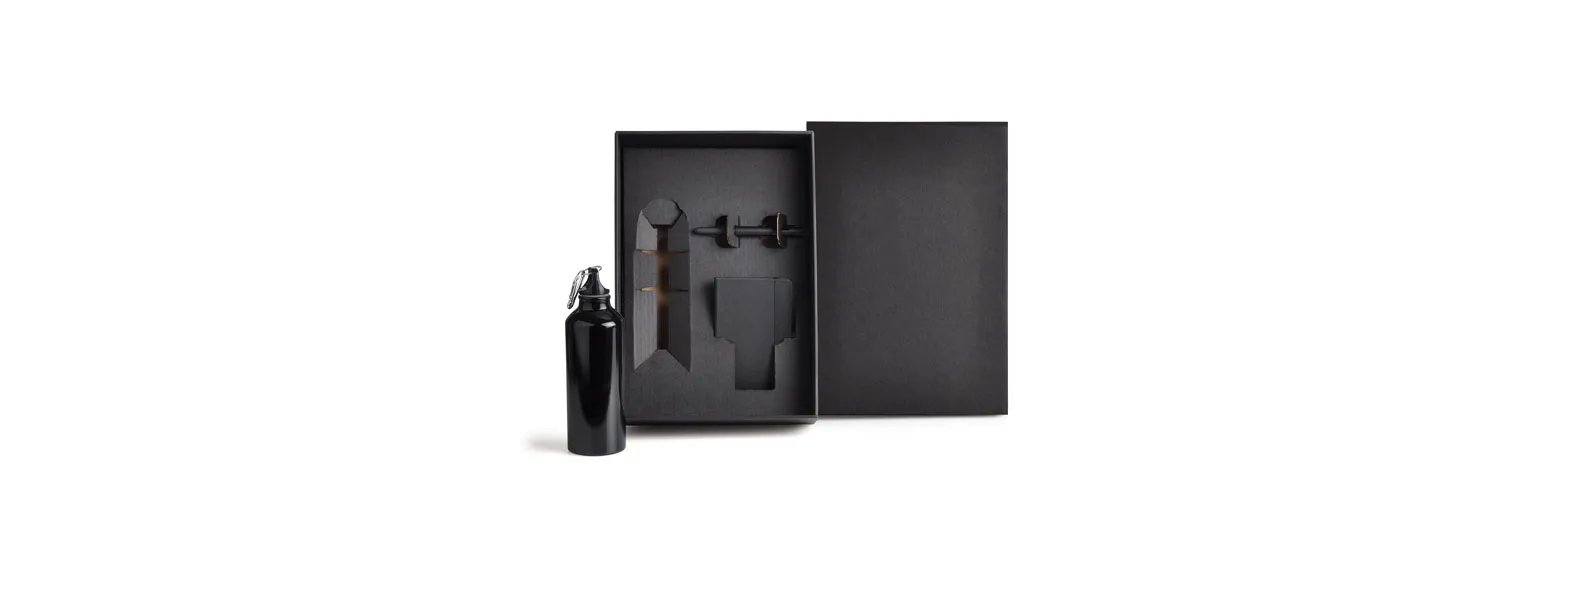 Kit squeeze, caderno e caneta. Composto por squeeze preto em alumínio revestido com verniz; caderno para anotações preto com capa dura e caneta esferográfica em ABS preta.